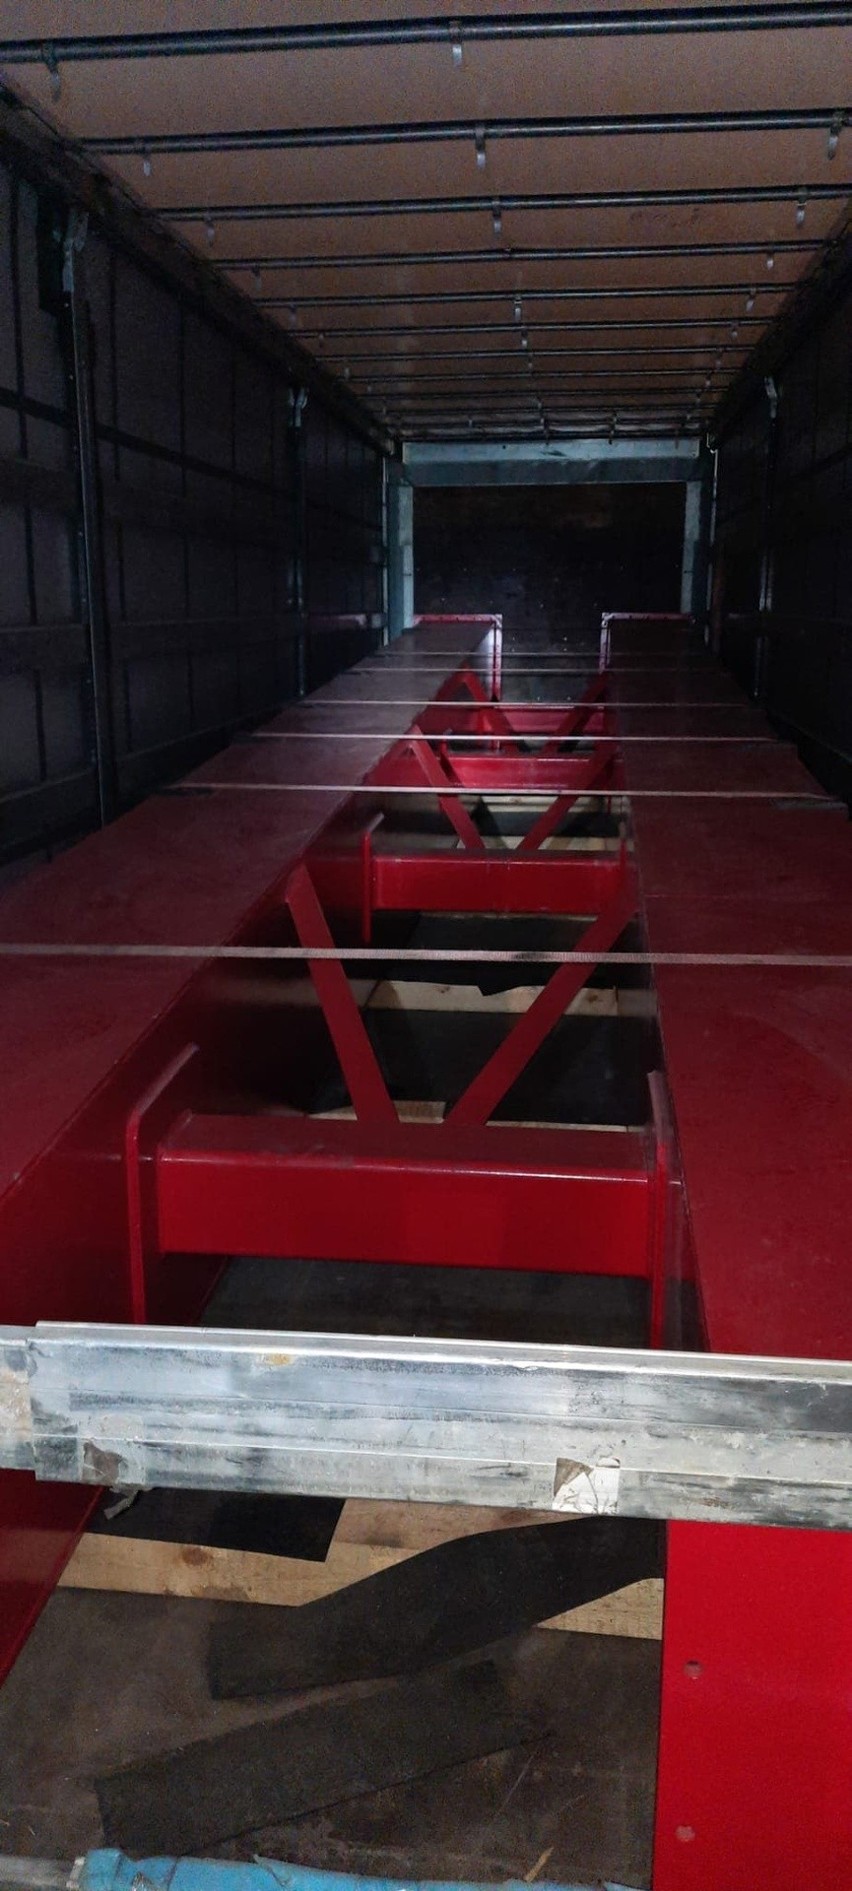 Gdynia. Policjanci z Kielc znaleźli w ciężarówce ponad 200 kilogramów narkotyków wartych 13 milionów złotych. Zobaczcie zdjęcia